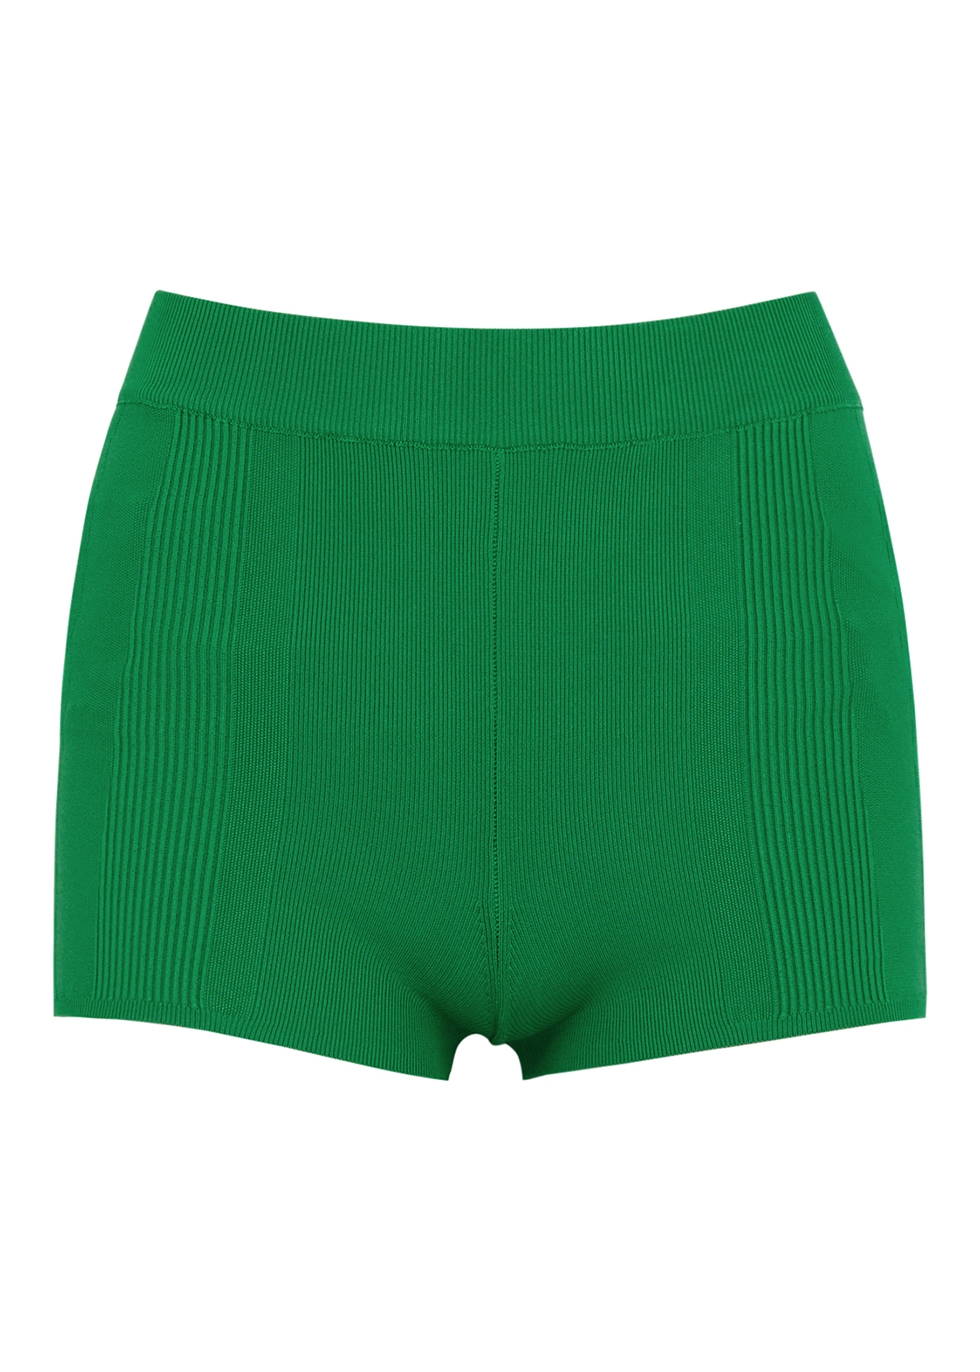 Le Short Basgia green ribbed shorts